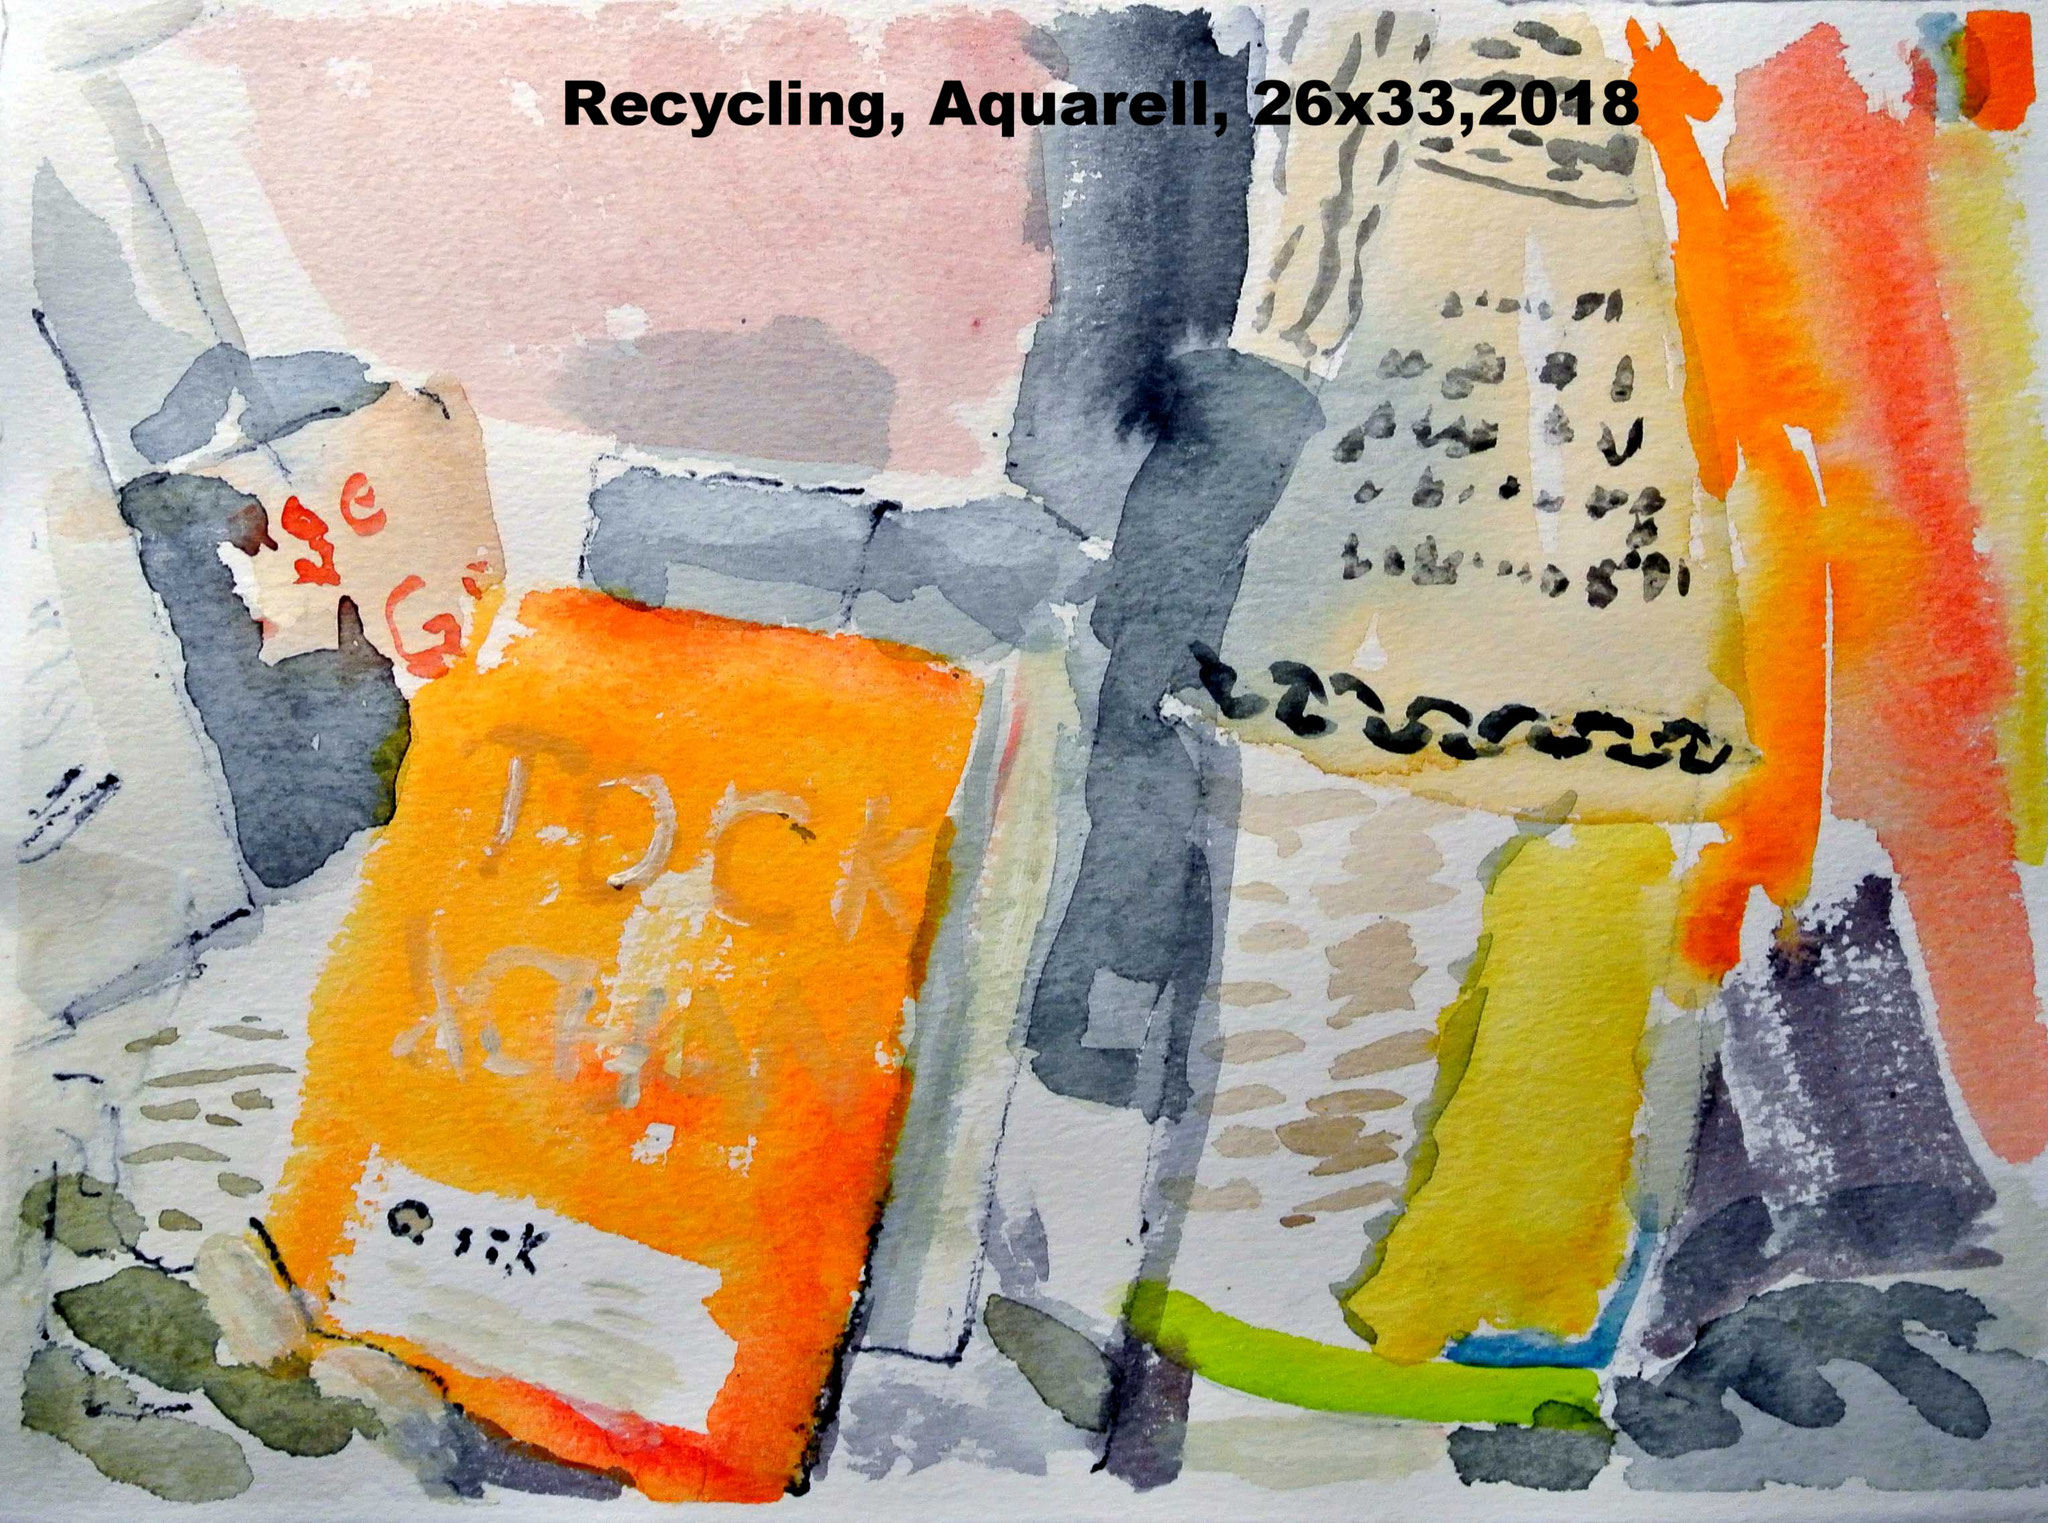 2 Recycling / Aquarell / 26 x 33 / 2018